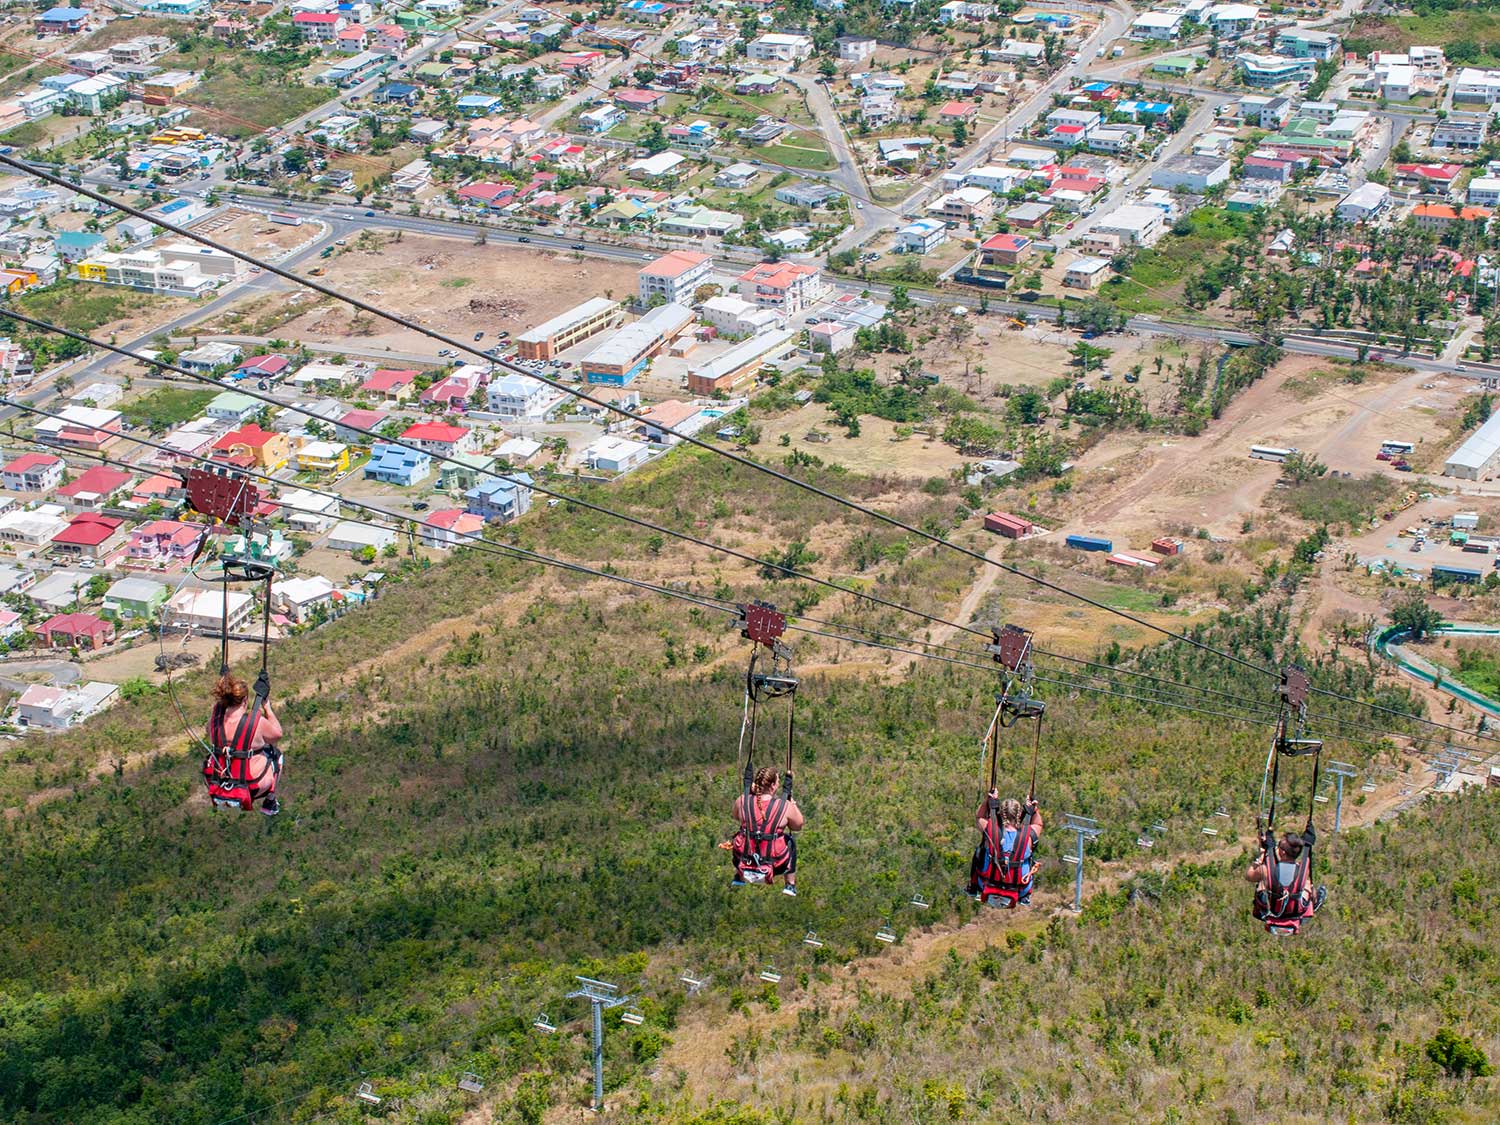 A zipline called the Flying Dutchman in Sint Maarten